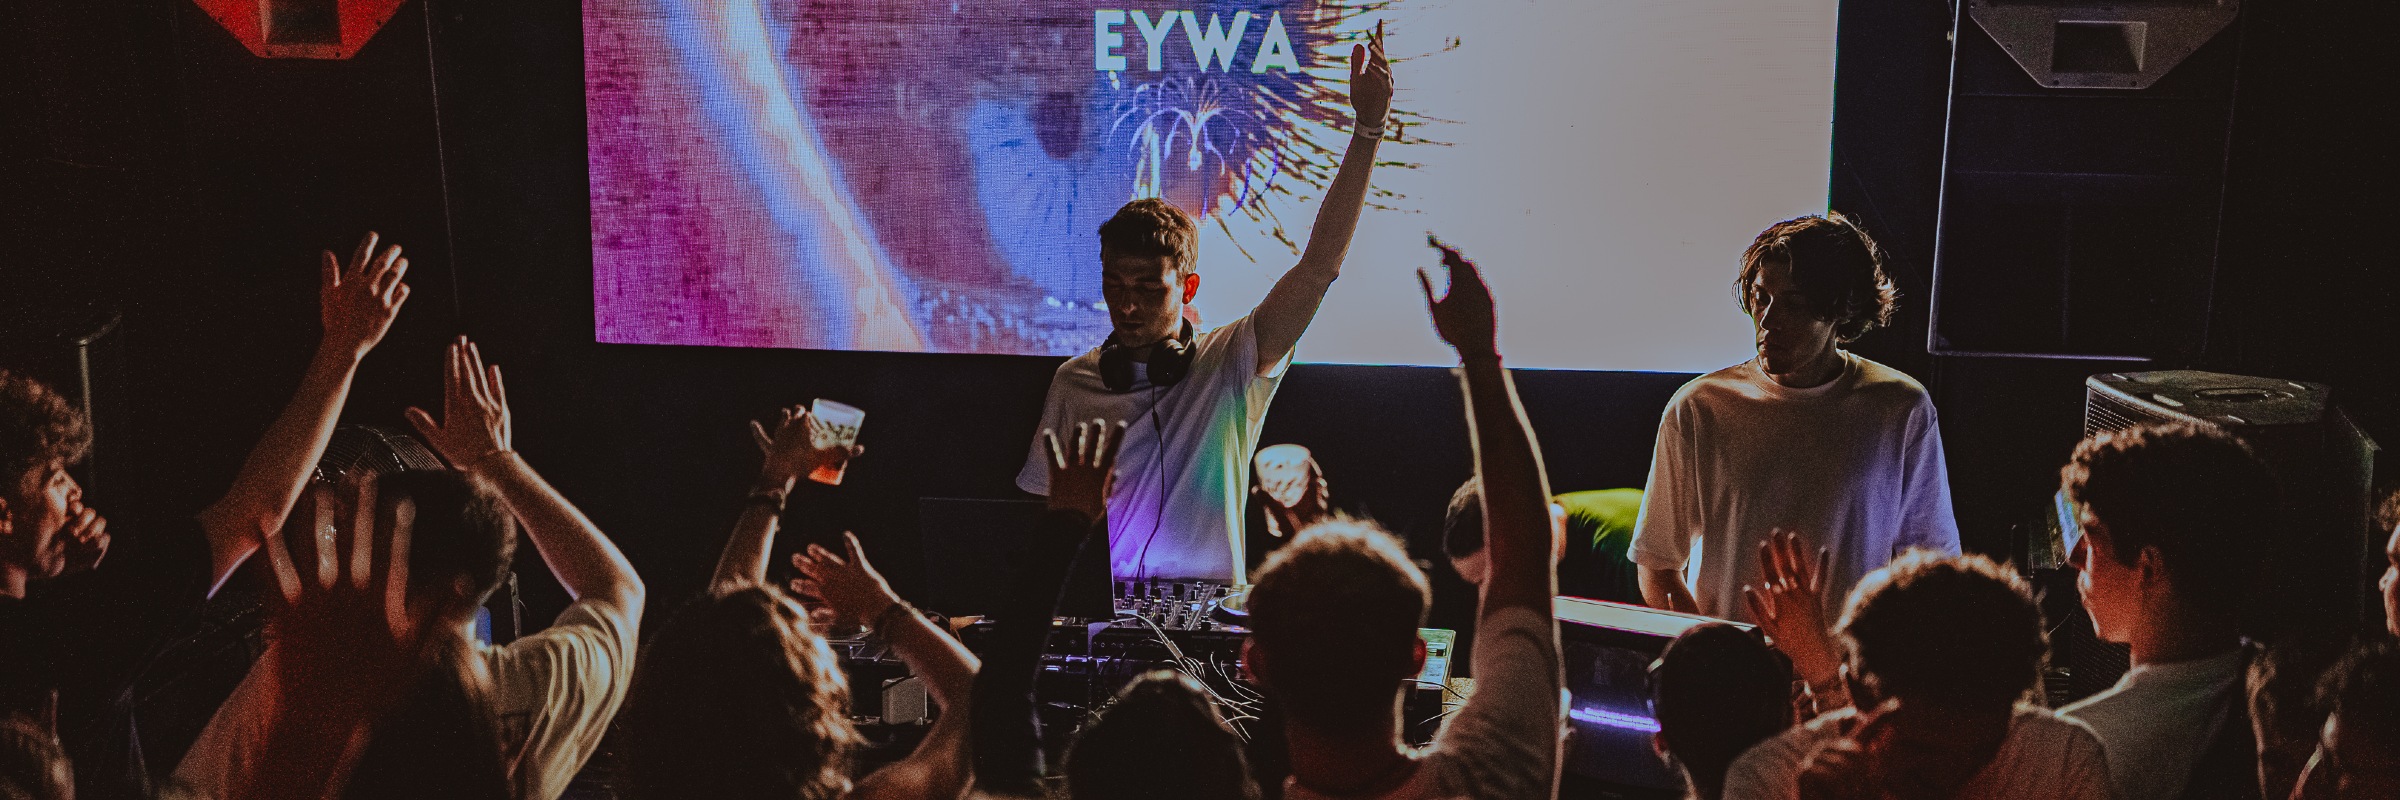 EYWA, DJ DJ en représentation à Loire Atlantique - photo de couverture